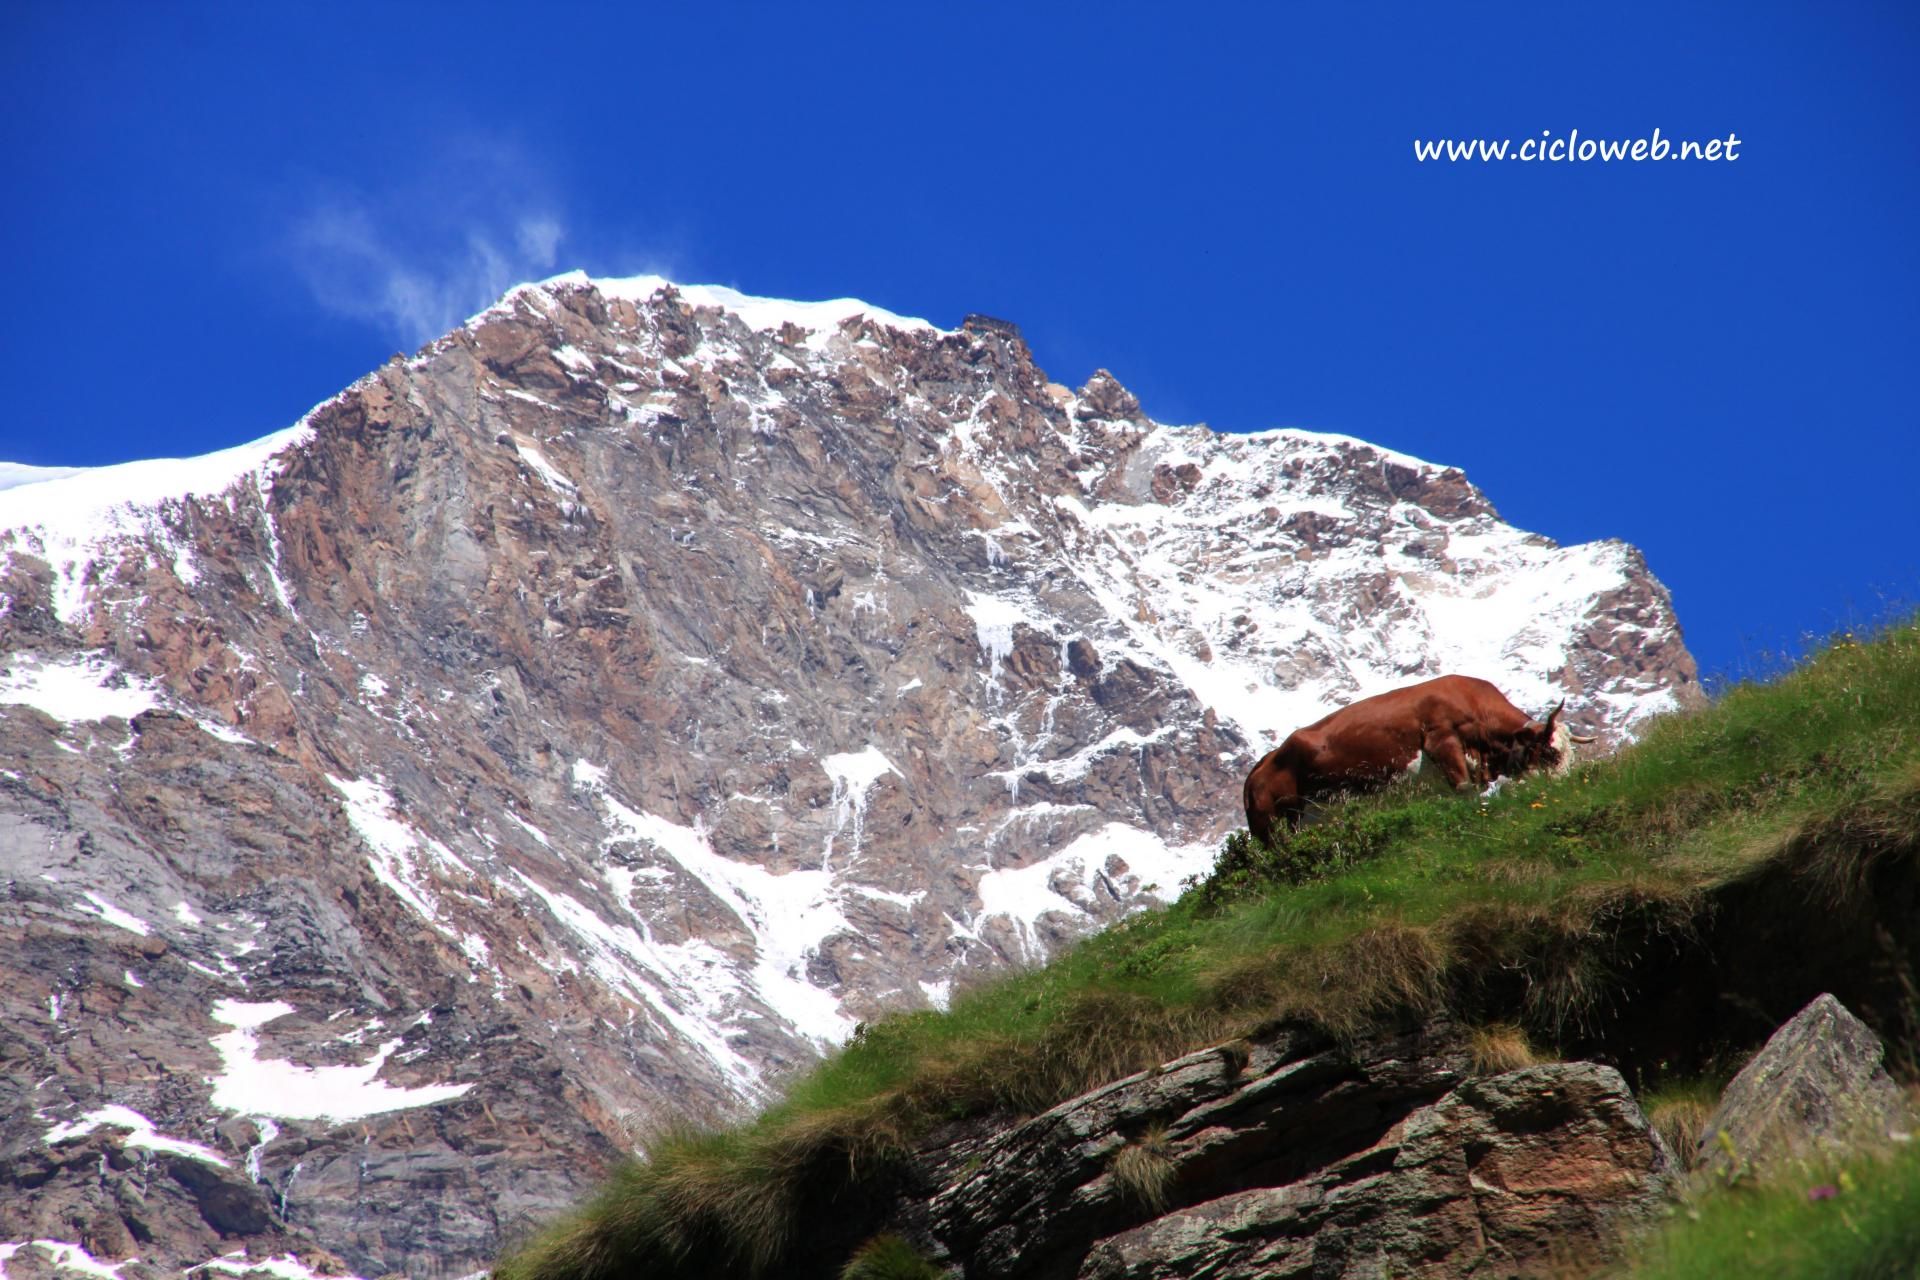 012 - Alpe Bors e rifugio Crespi Calderini, sullo sfondo il Monte Rosa.jpg